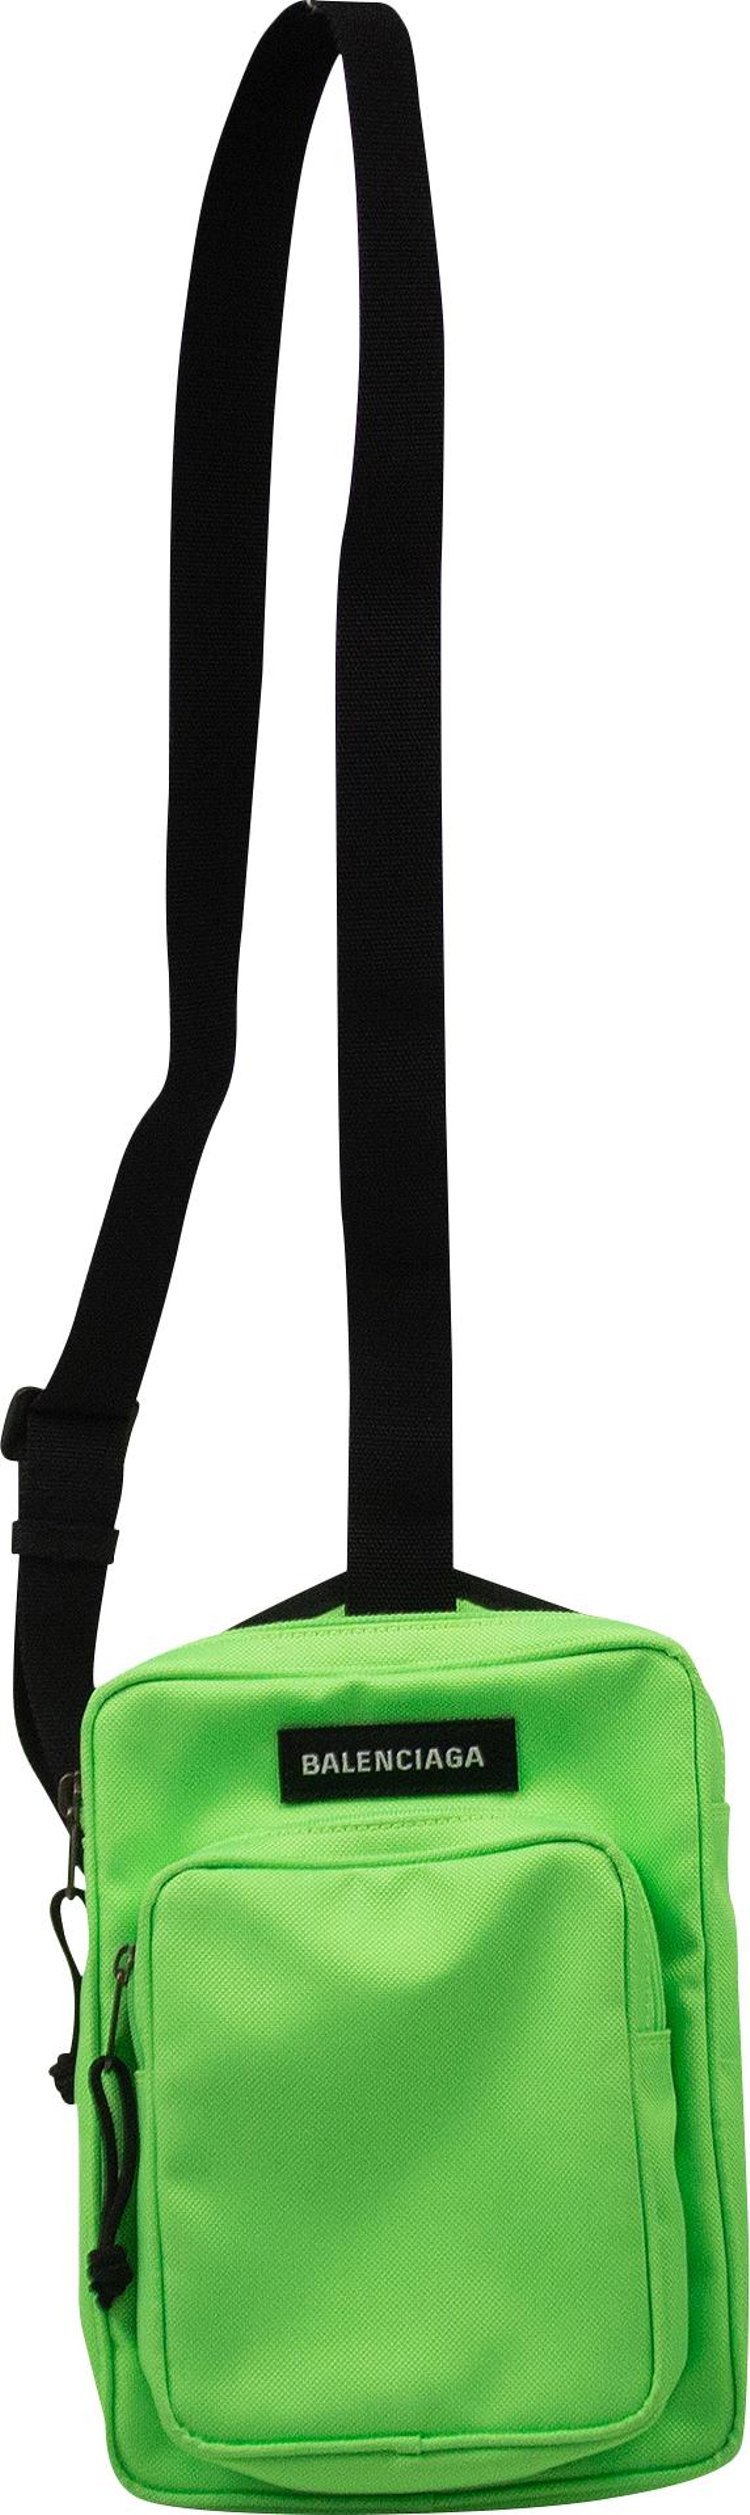 Balenciaga Explorer Crossbody Messenger Bag 'Green'